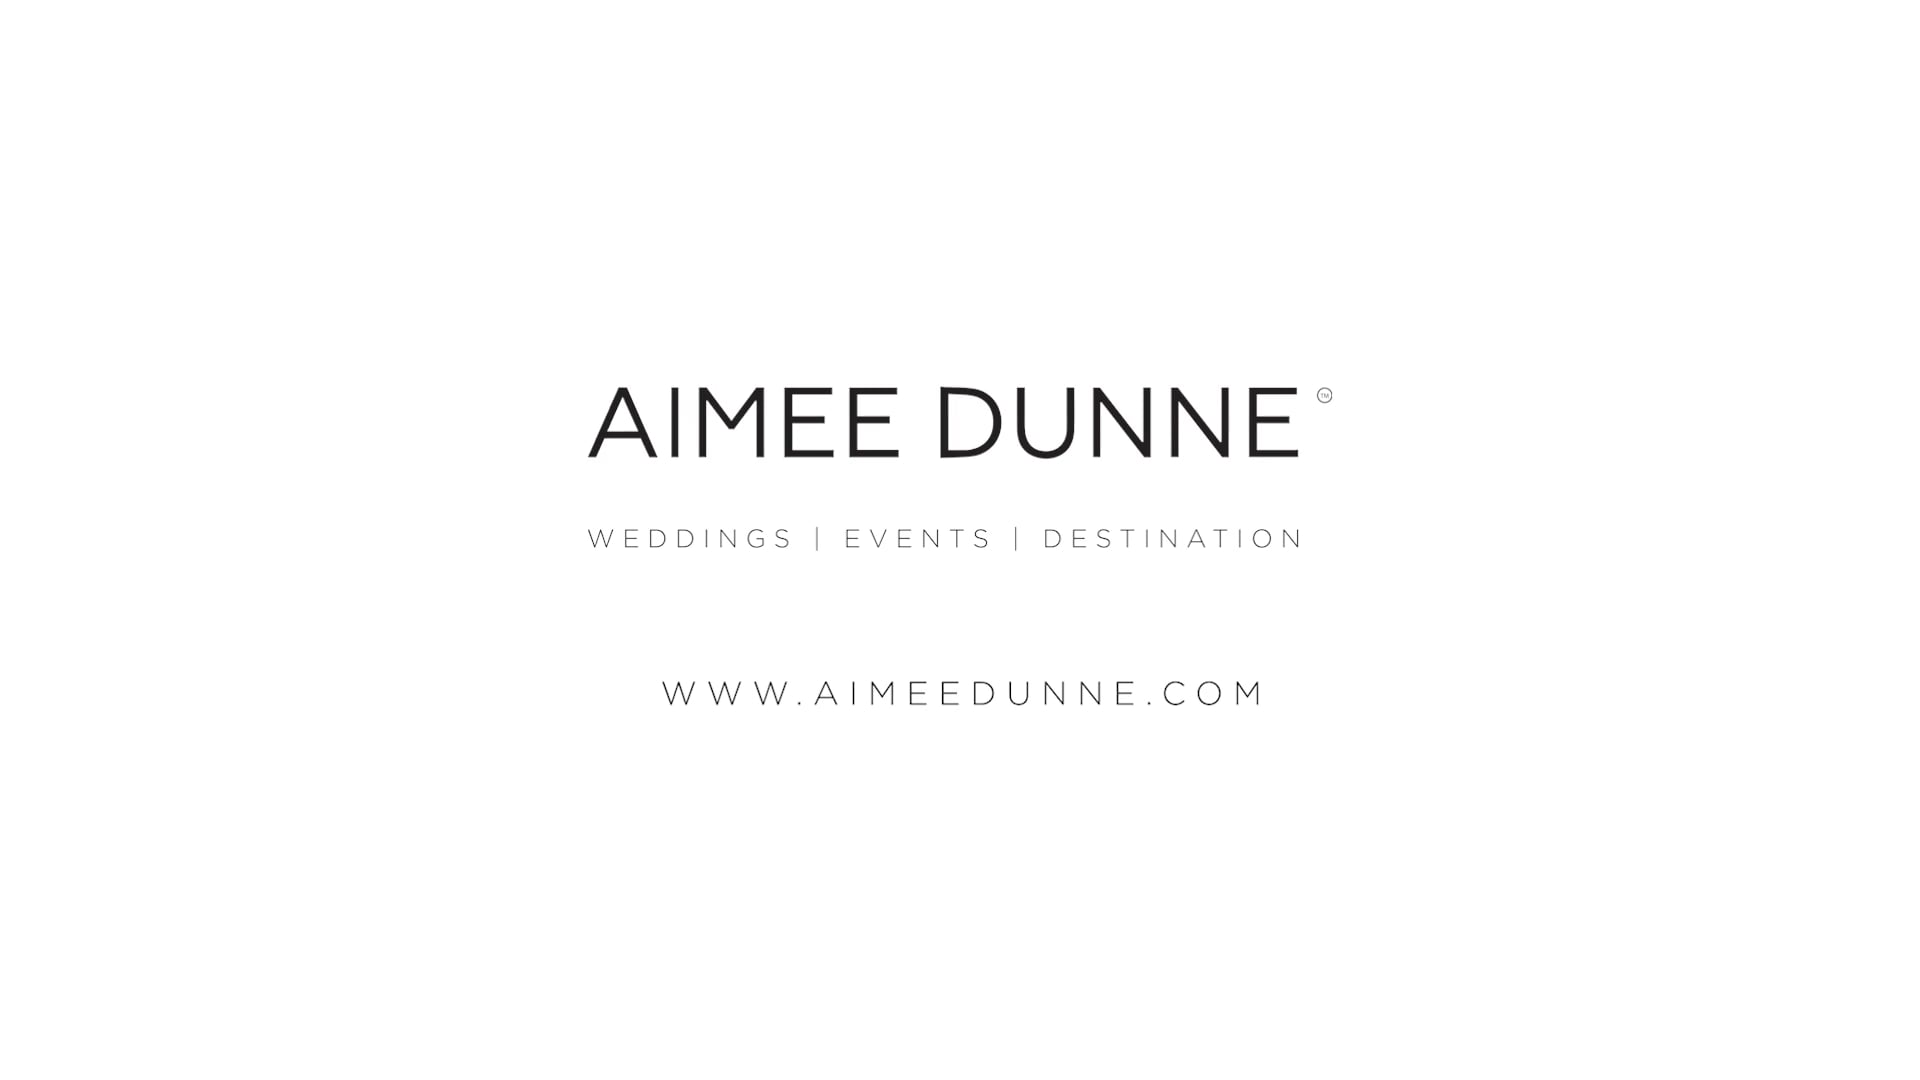 Aimee Dunne Ltd